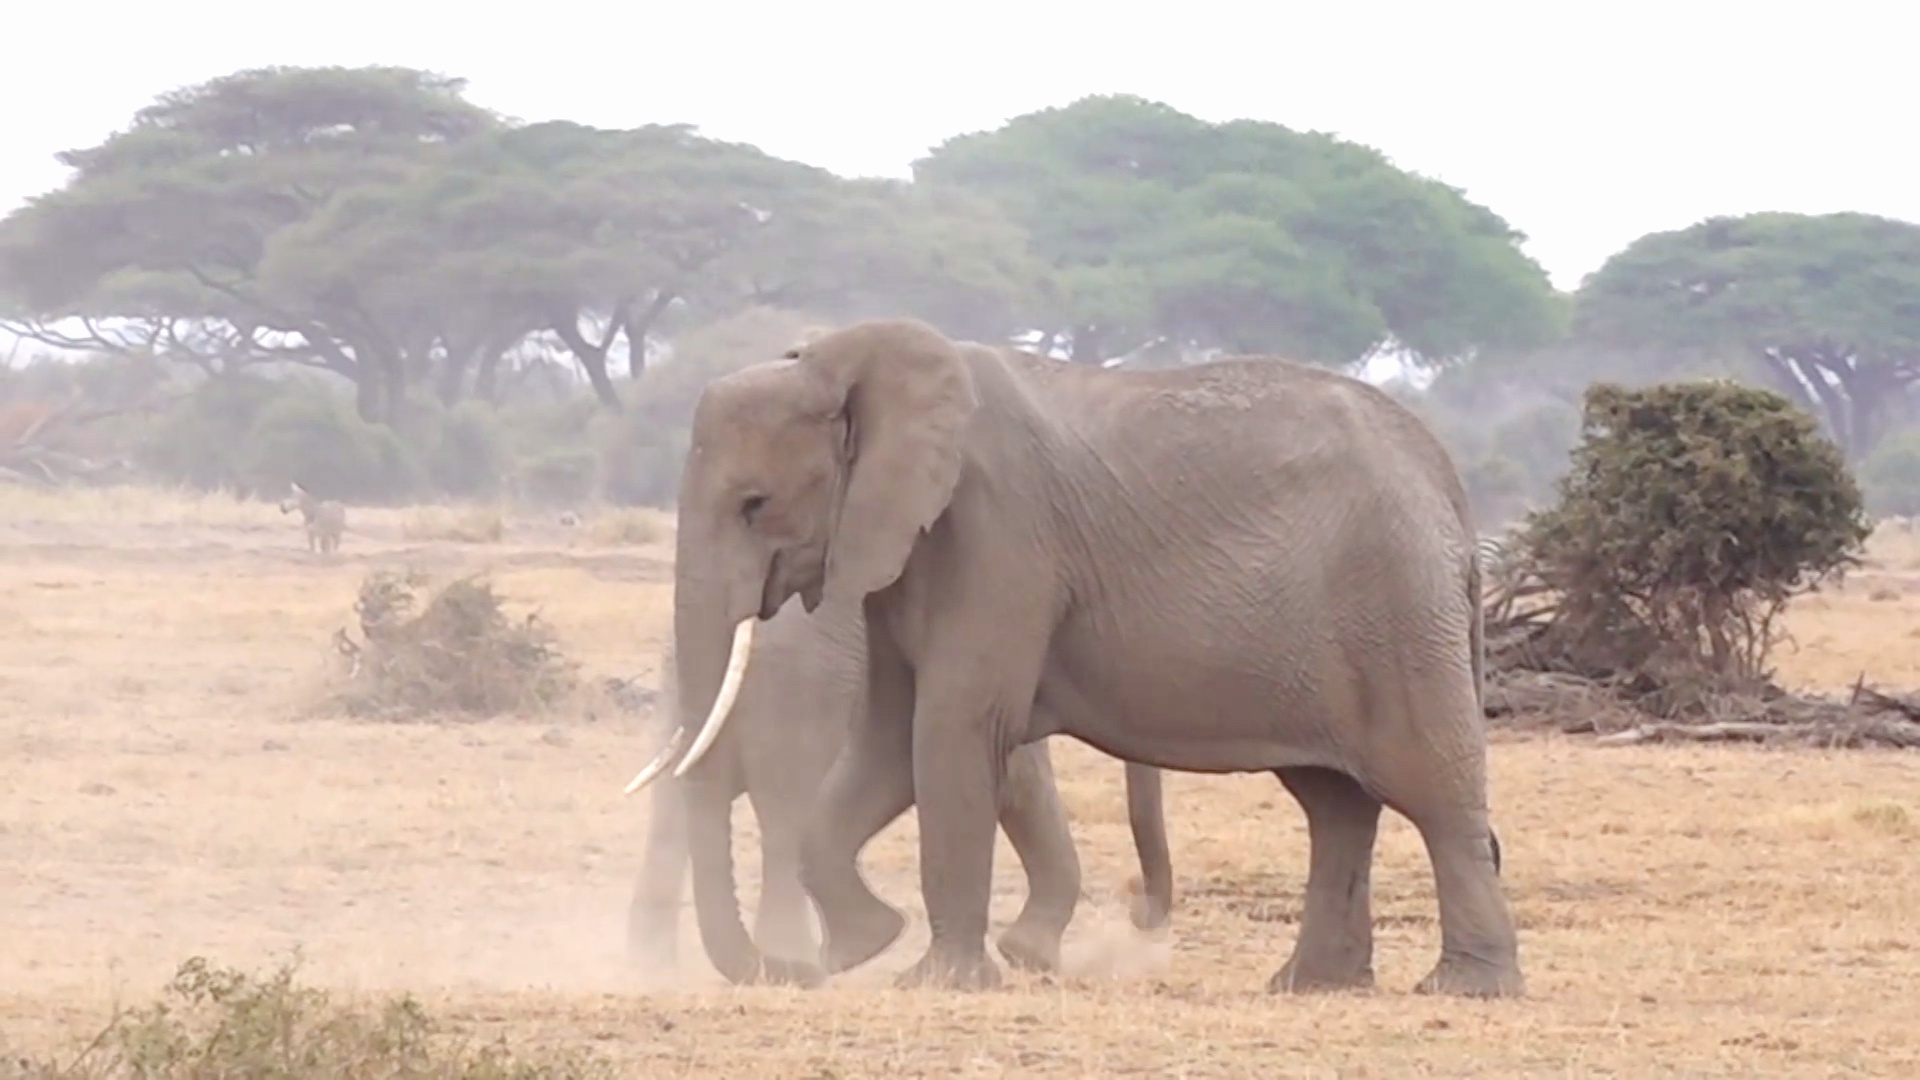 Дать имя слону и помочь заповеднику предлагают в Кении